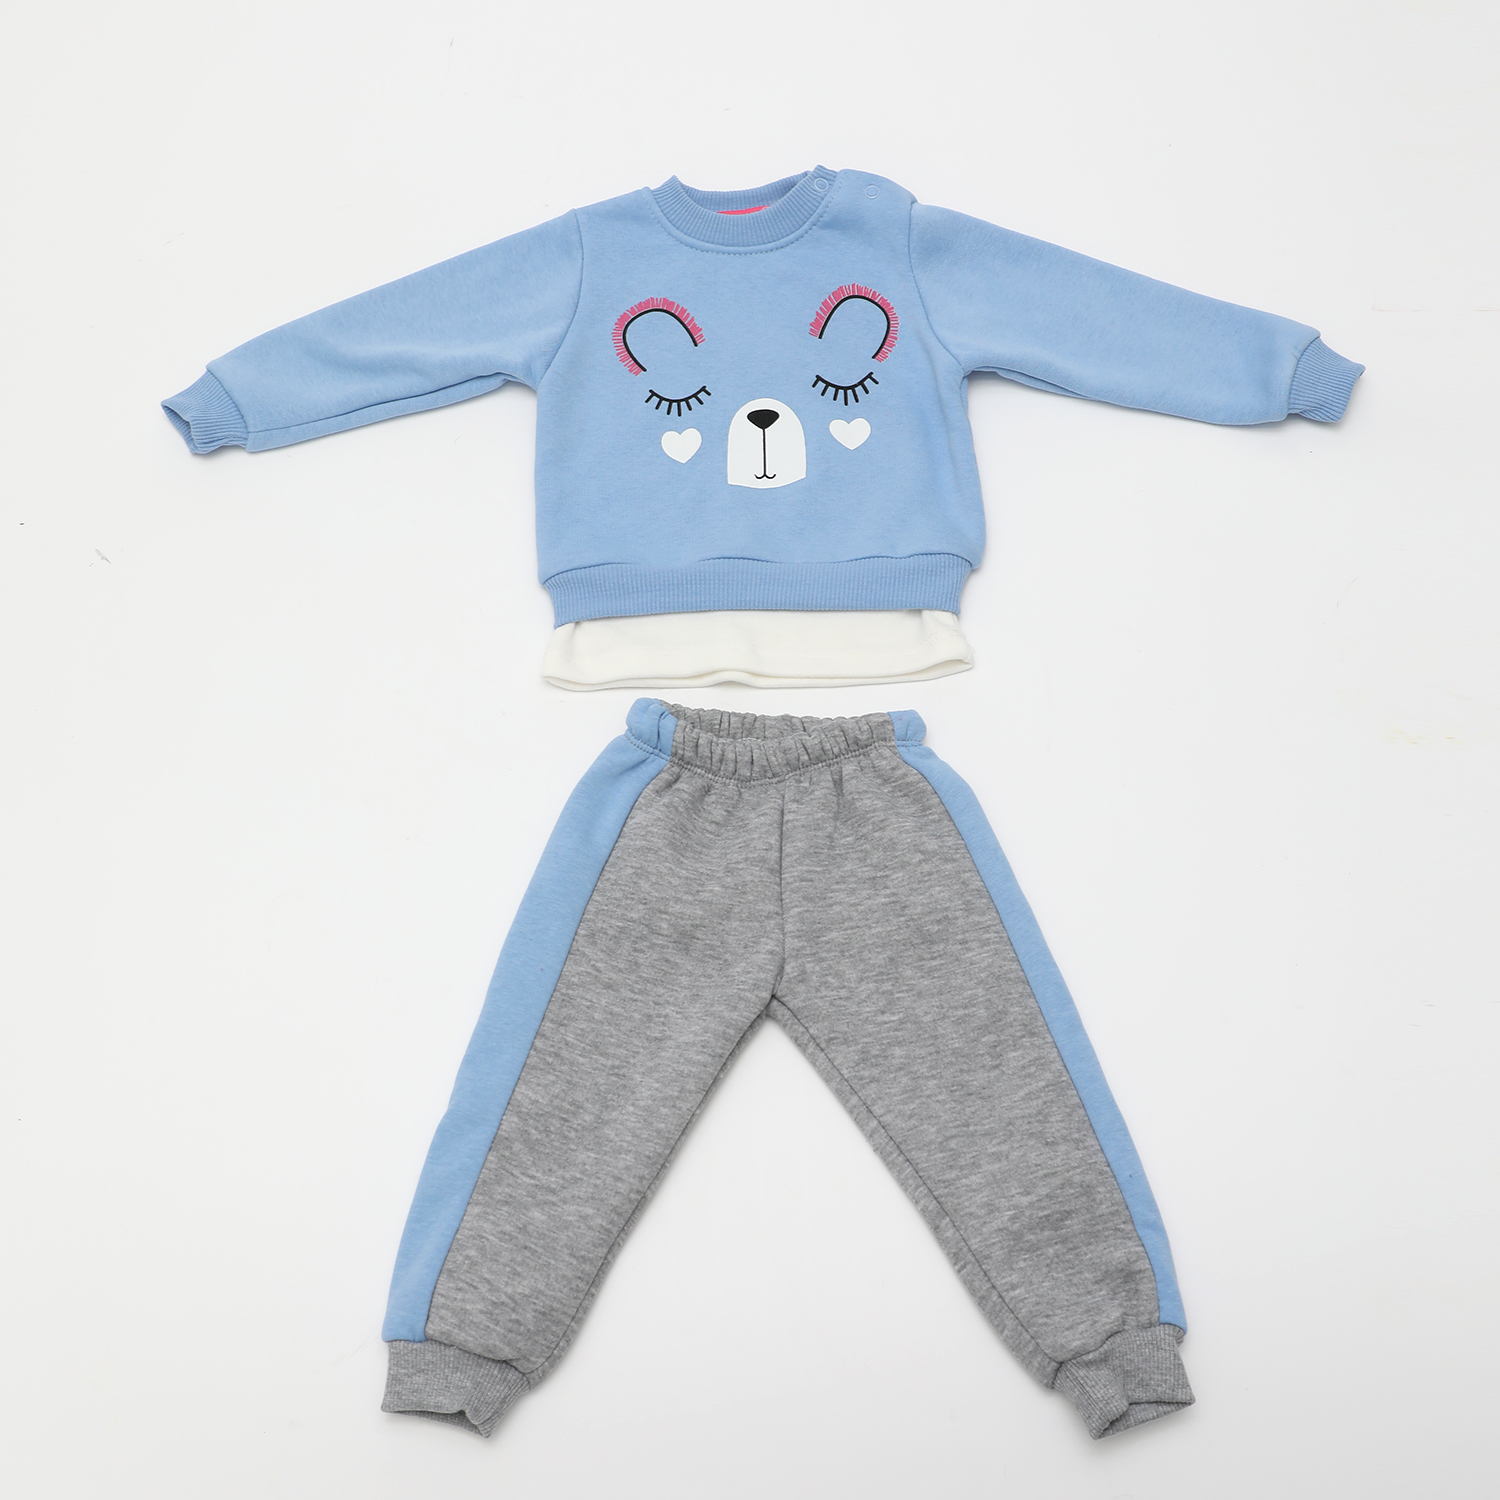 Παιδικά/Baby/Ρούχα/Σετ SAM 0-13 - Βρεφικό σετ φόρμας SAM 0-13 γαλάζια γκρι